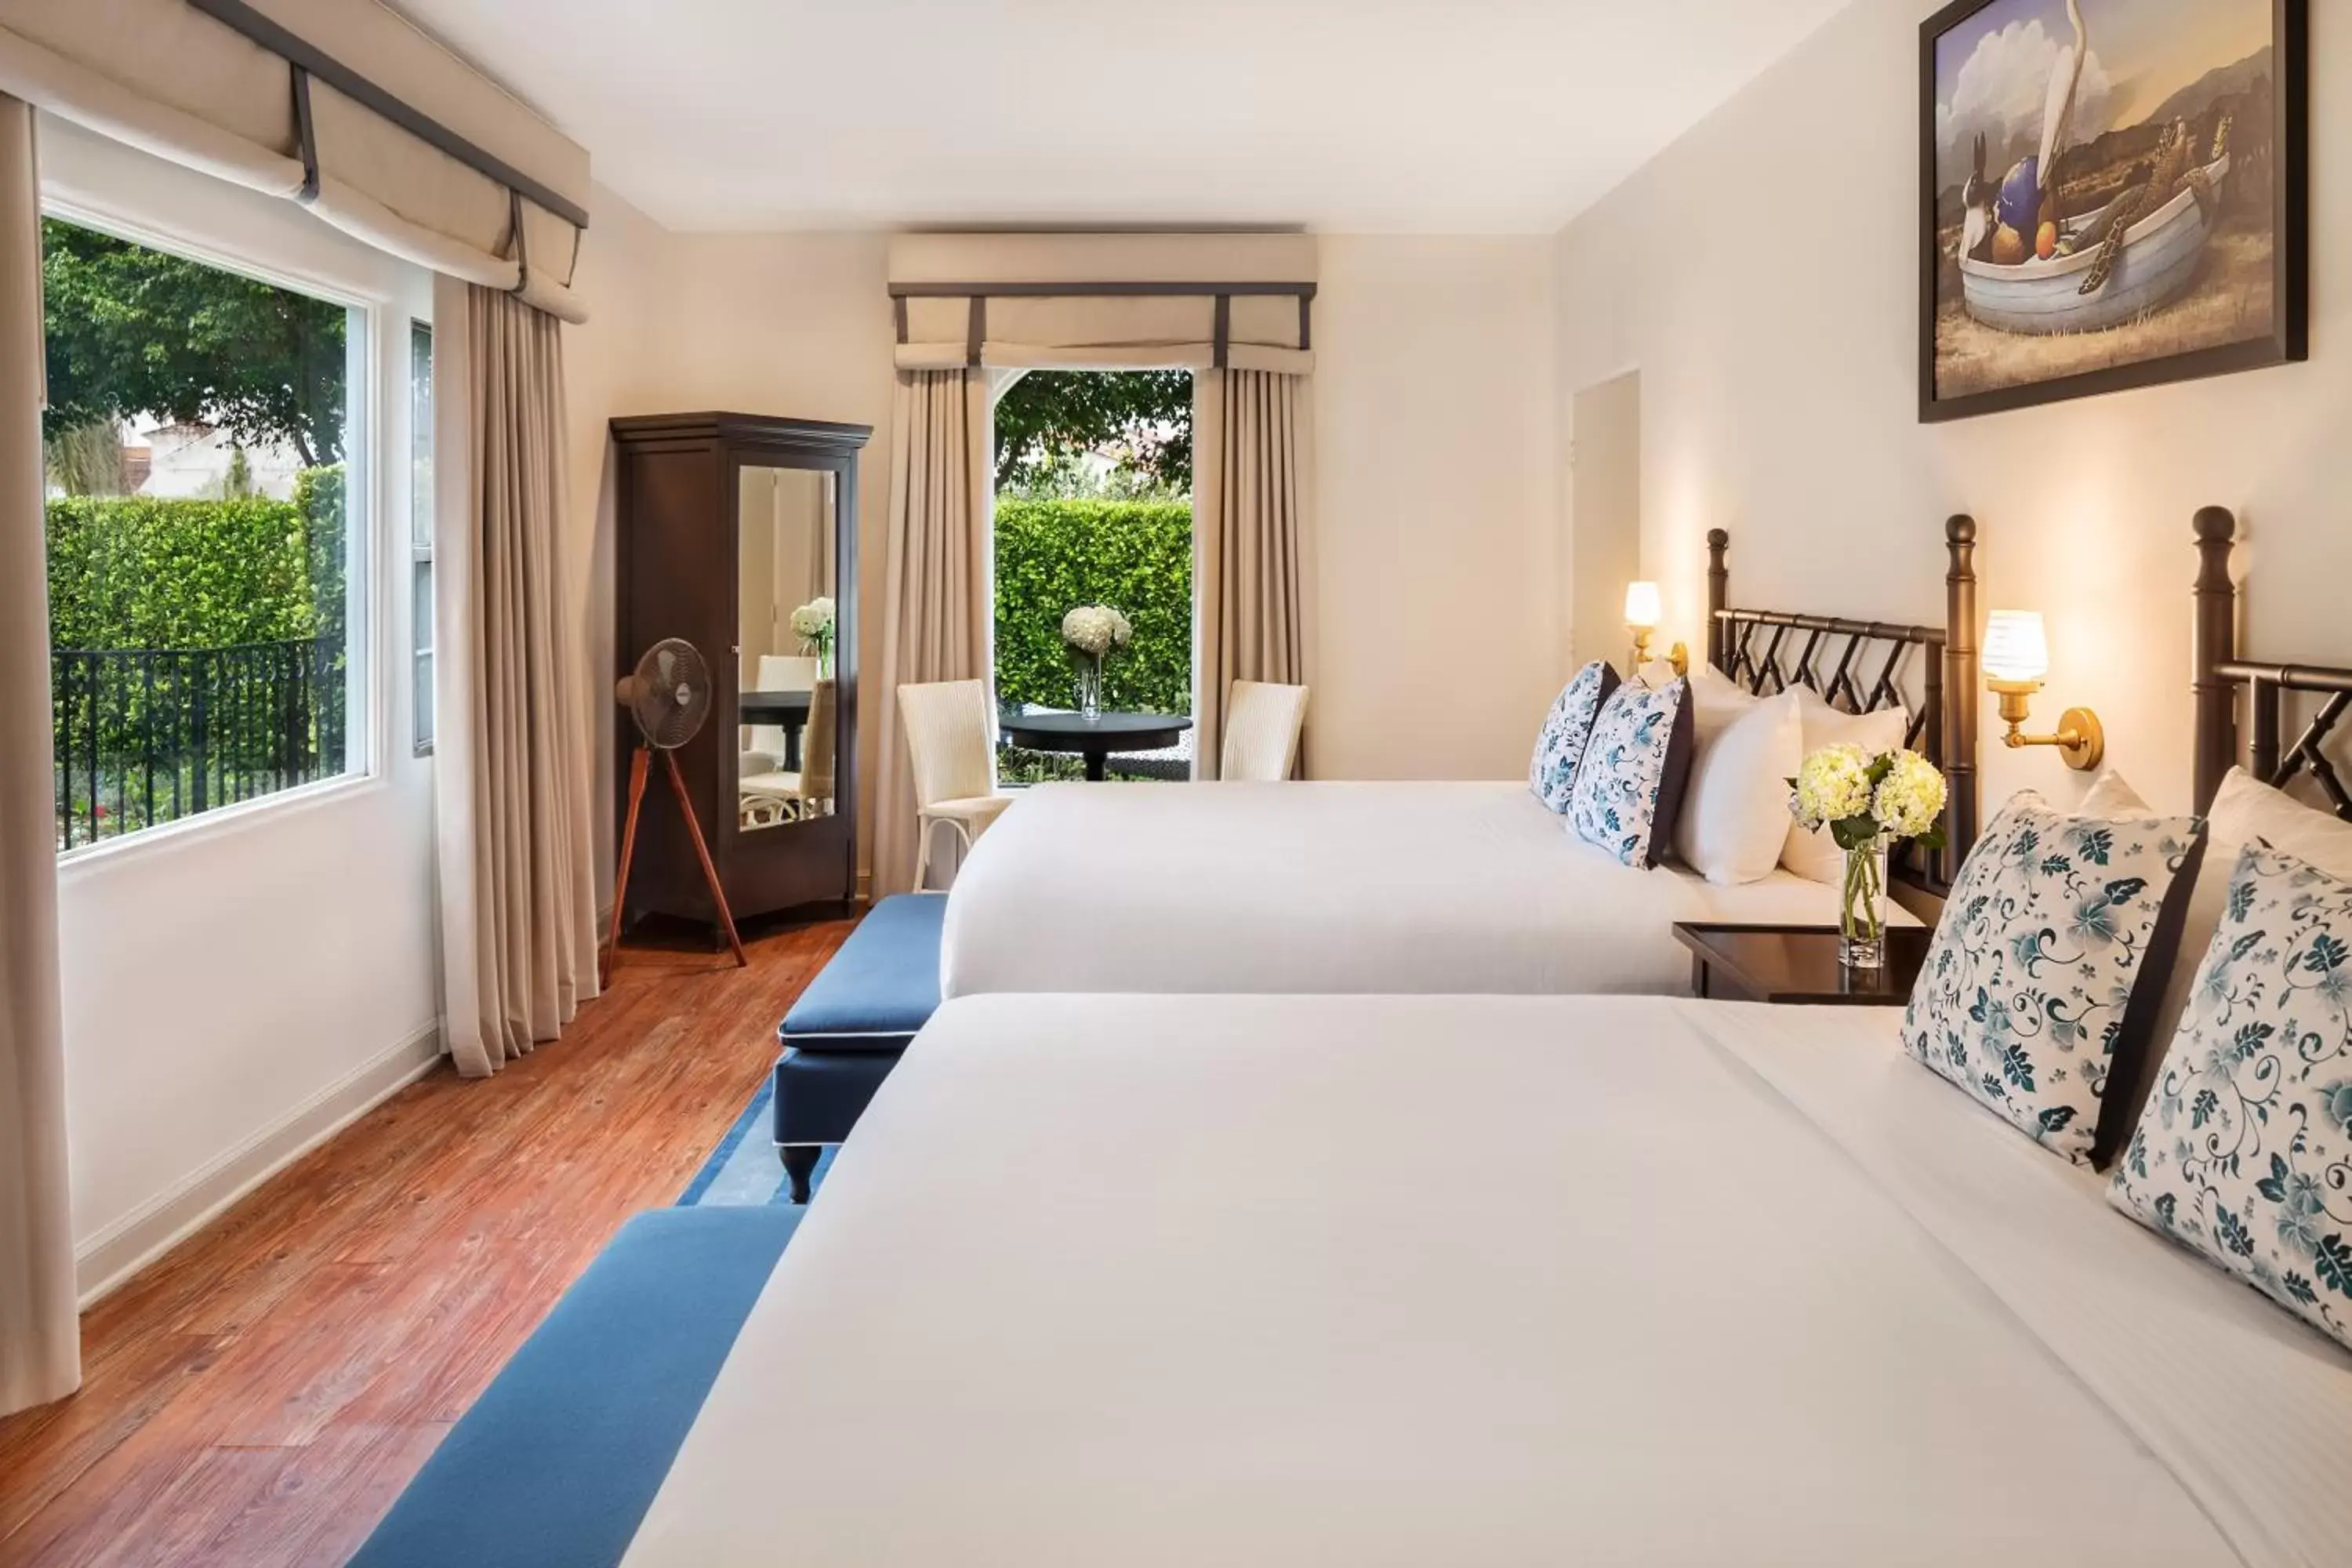 Bed, Room Photo in Hotel Milo Santa Barbara